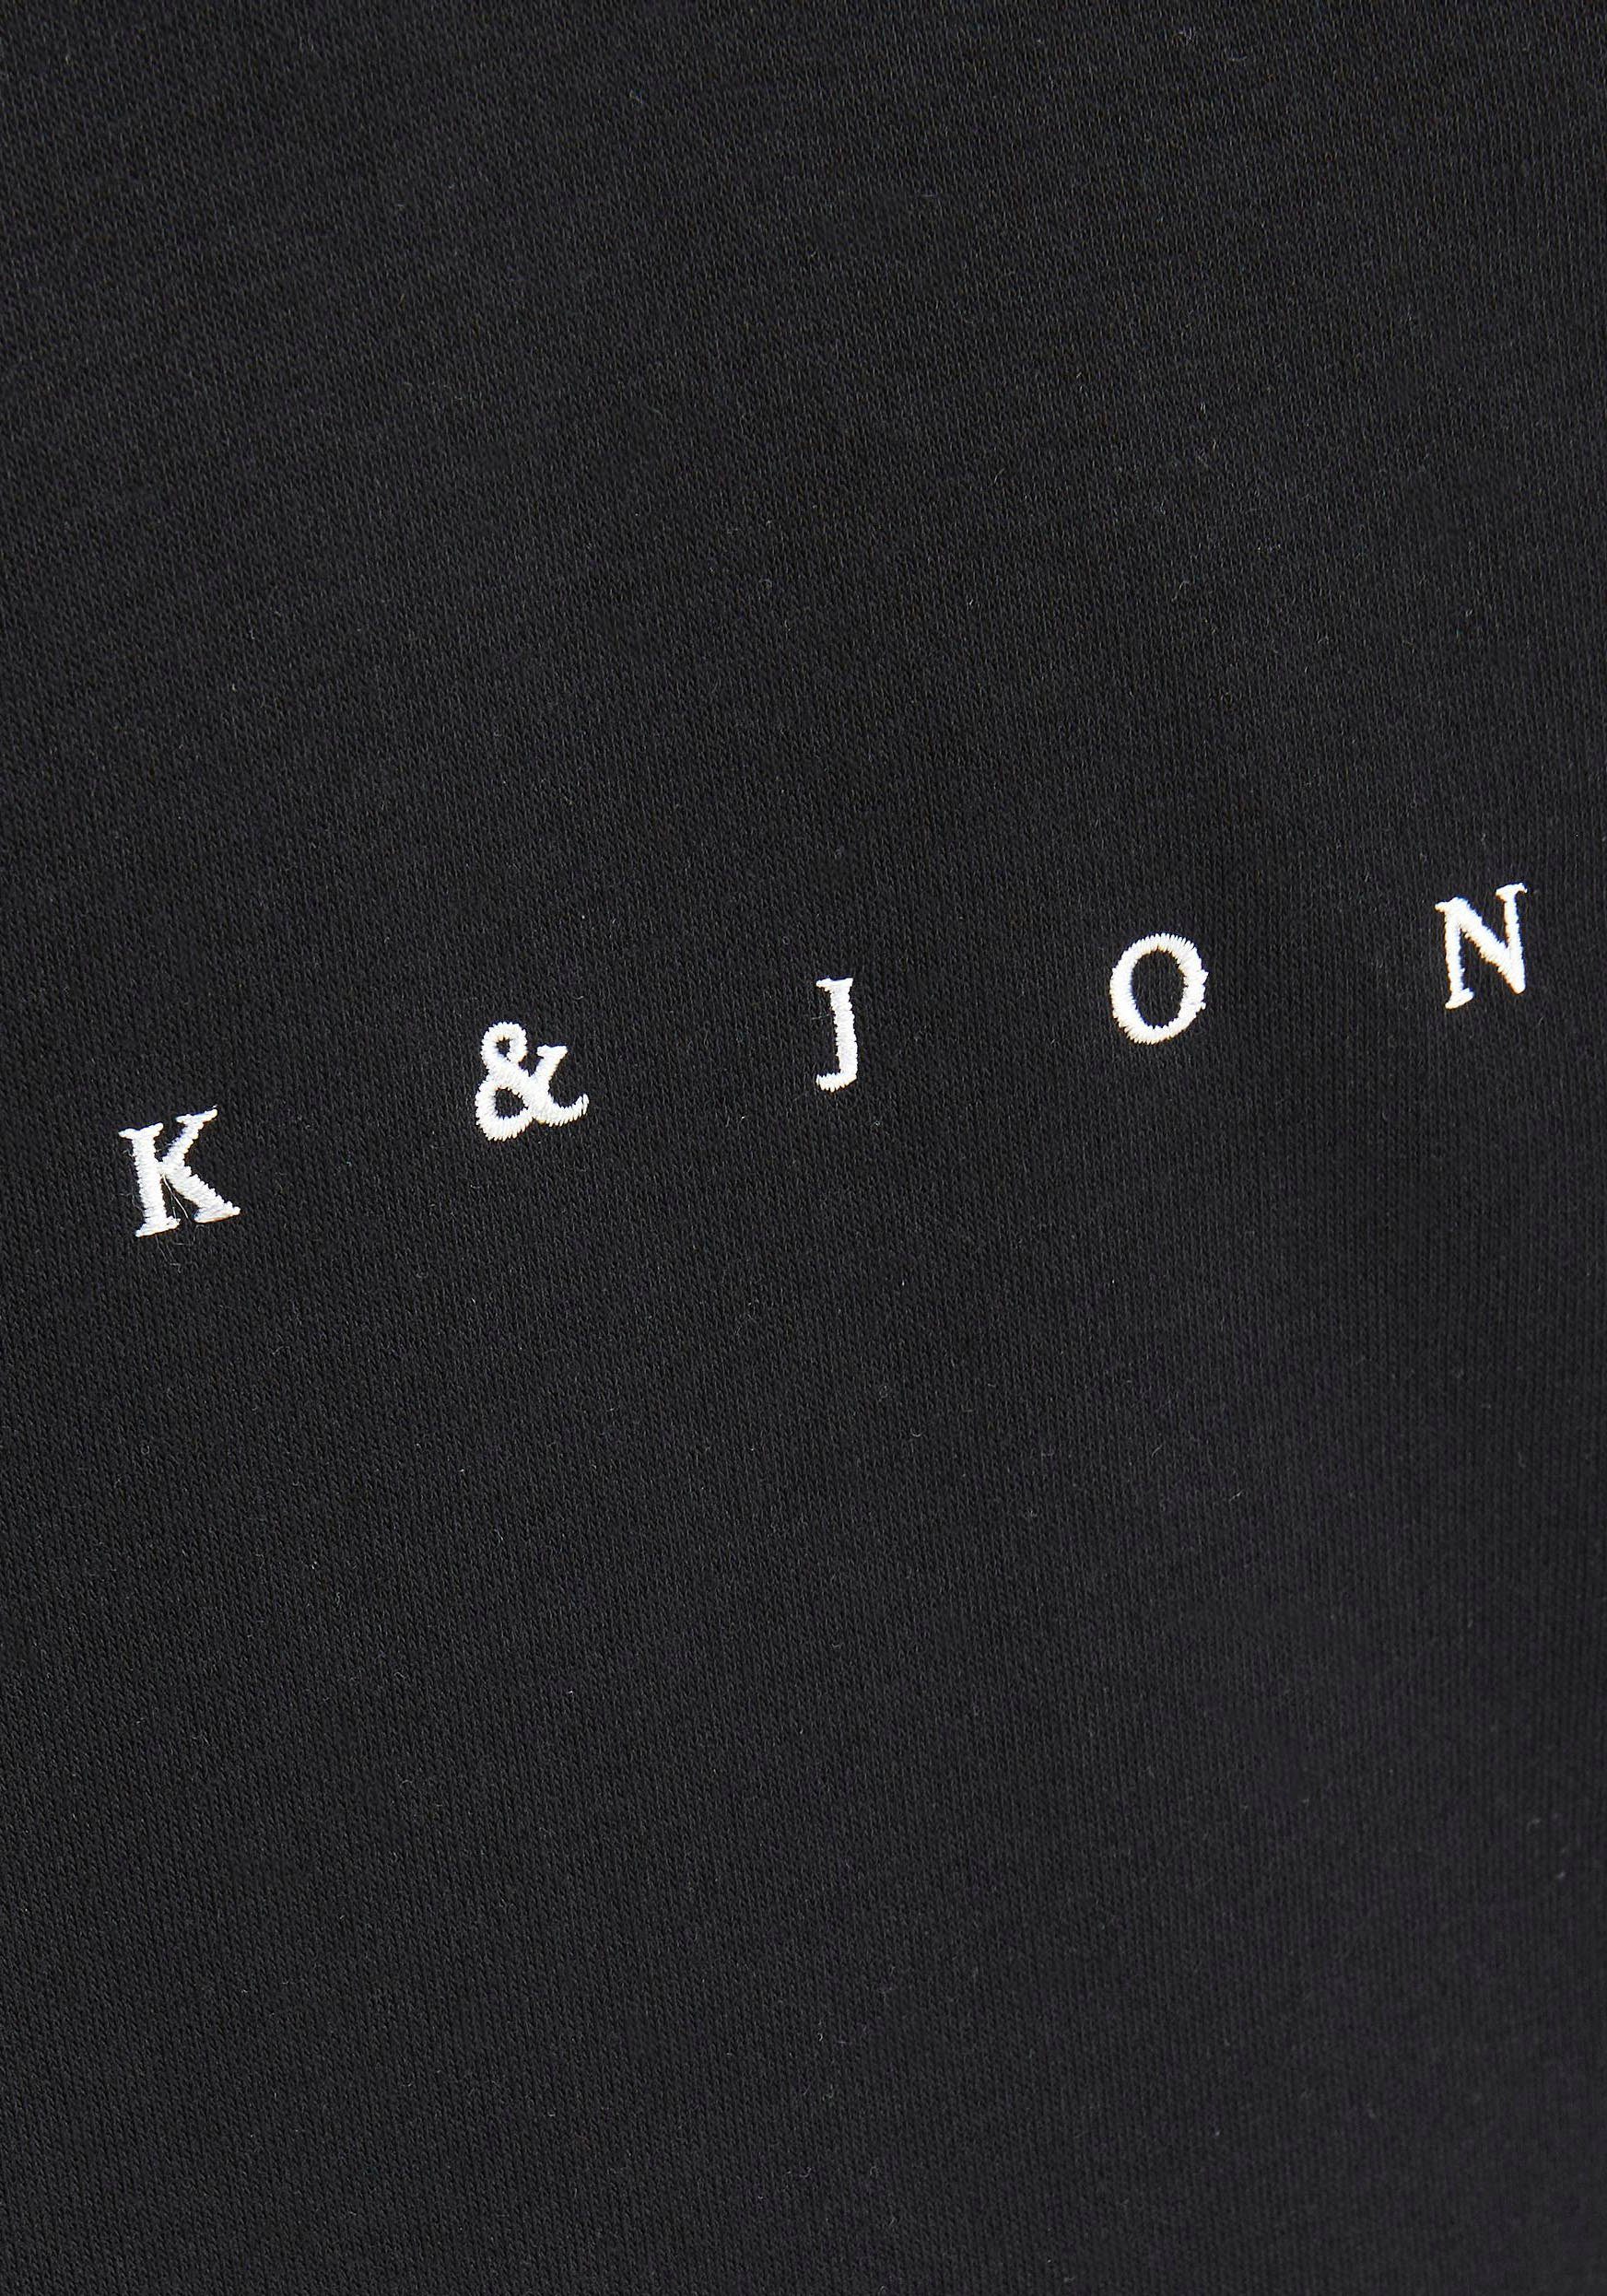 Detail Junior JORCOPENHAGEN JNR Jack Jones & NOOS Black HOOD Kapuzensweatshirt SWEAT